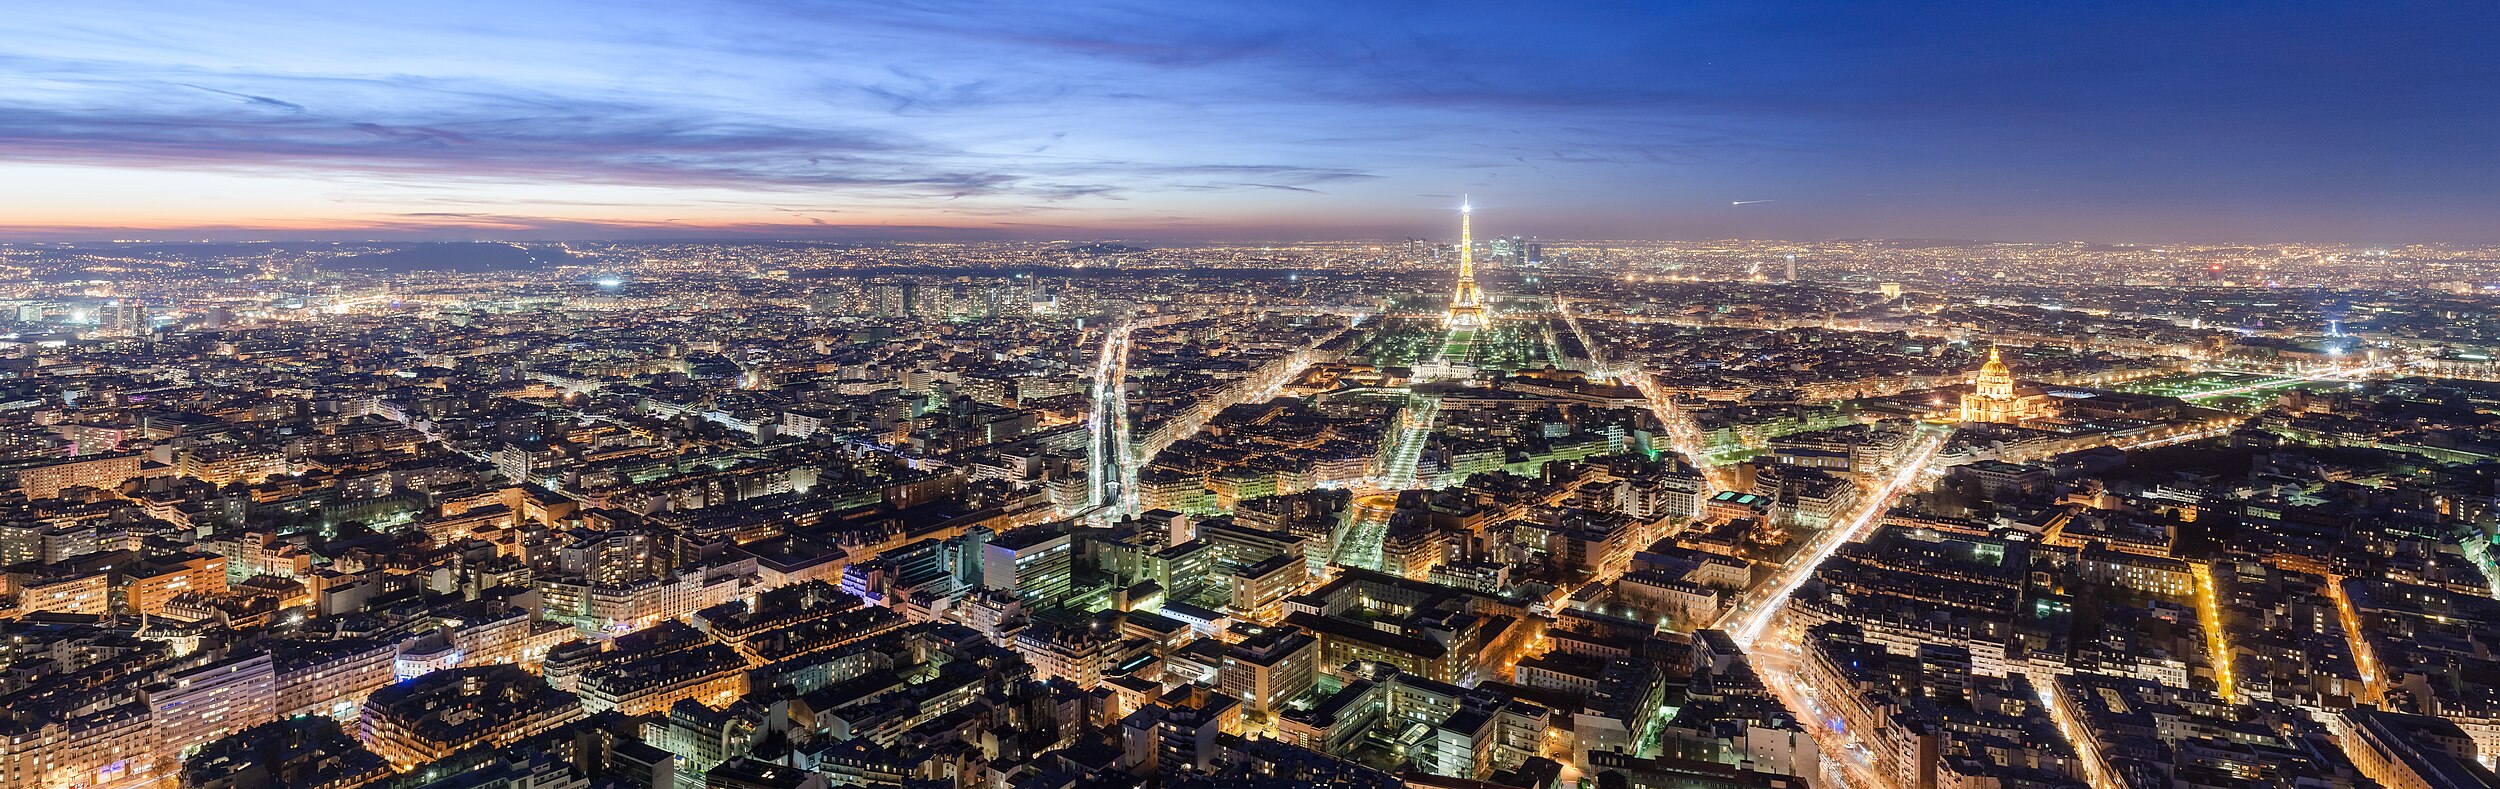 תמונה פנורמית של העיר פריז